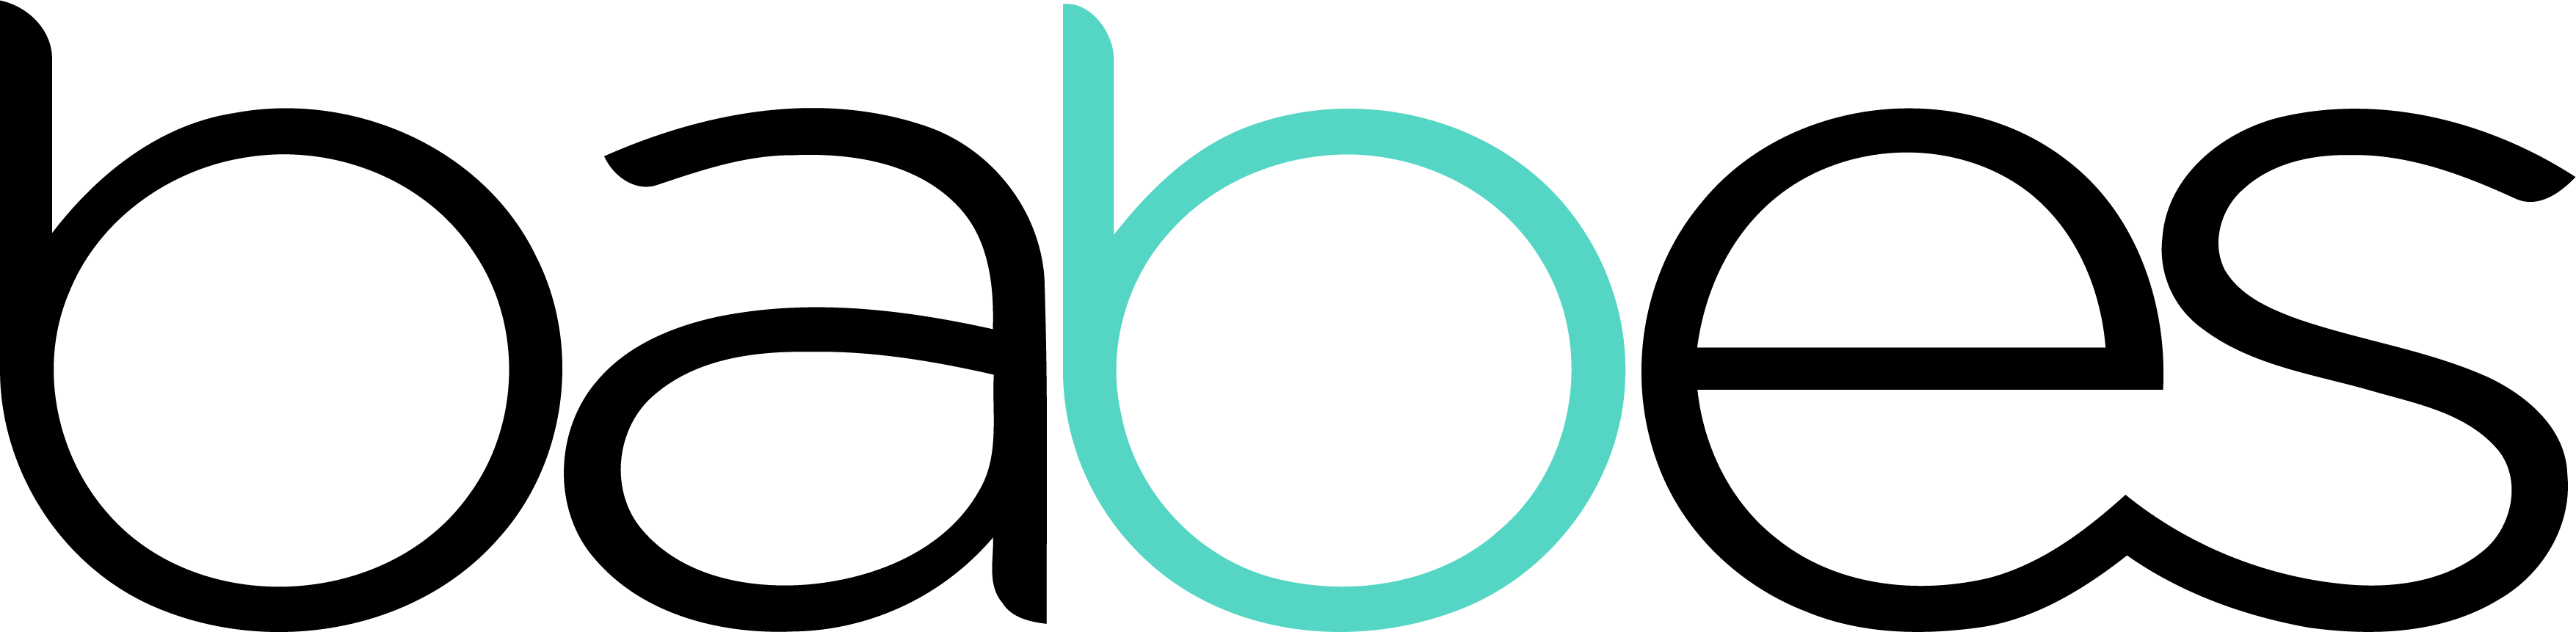 logo sieci babes